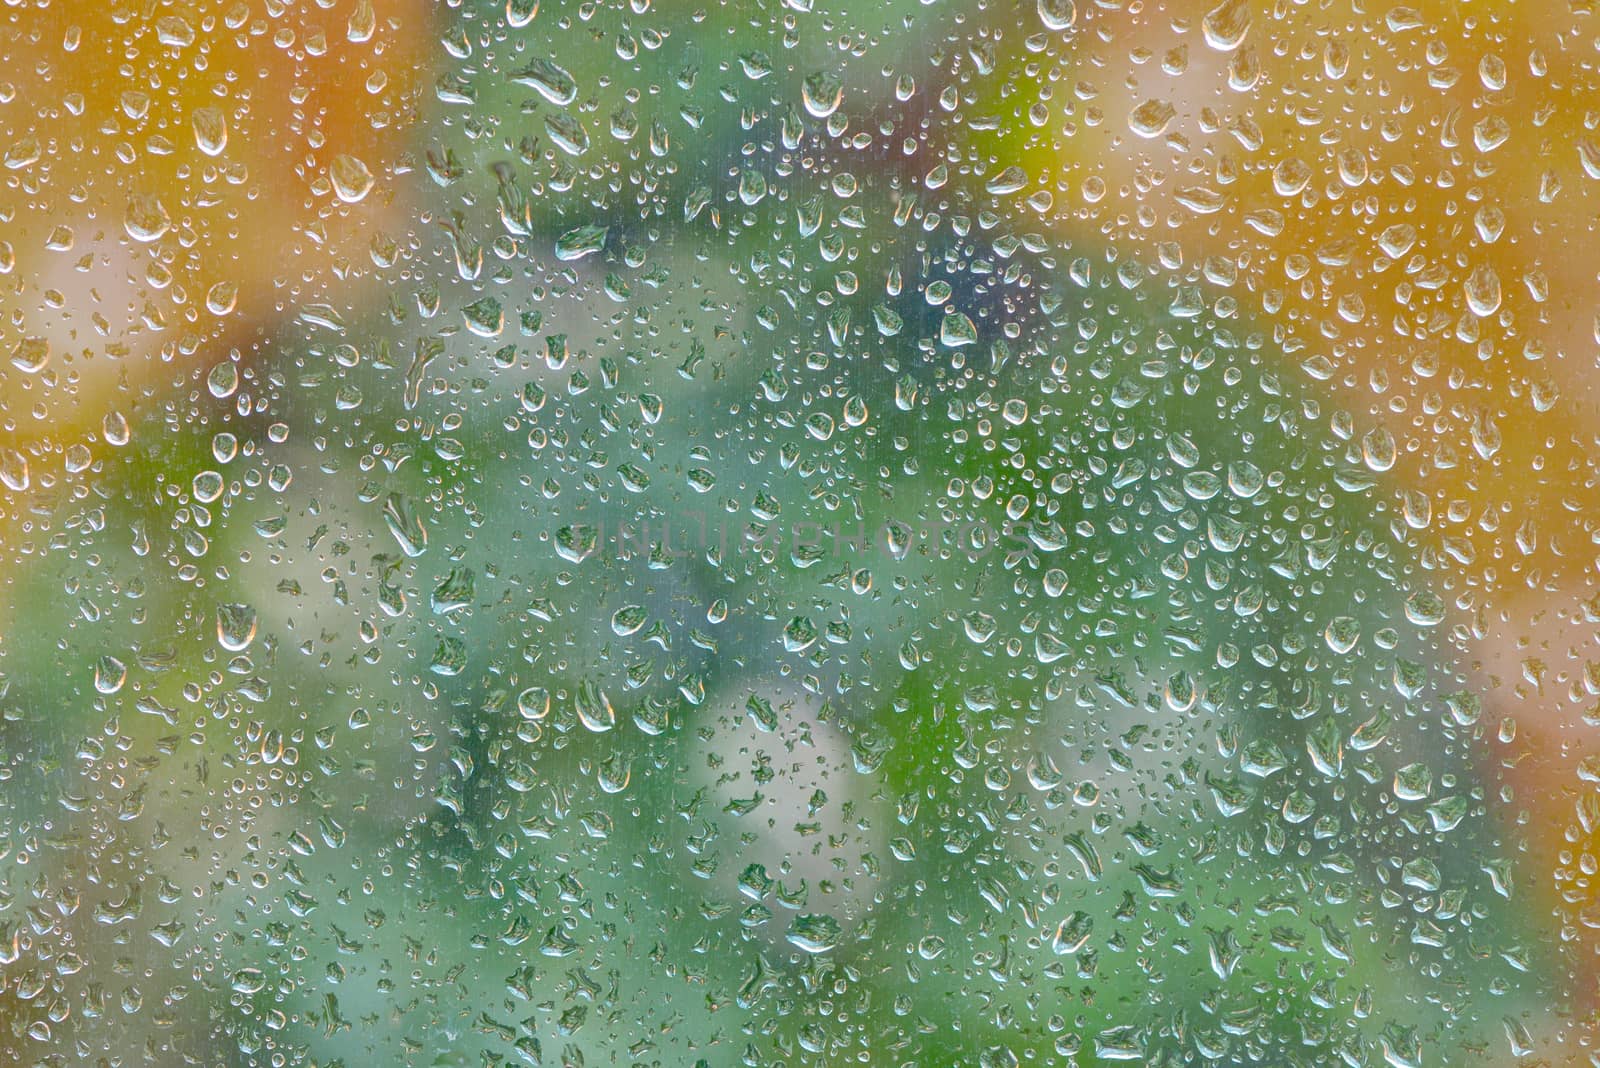 Water drops on glass window by jordachelr